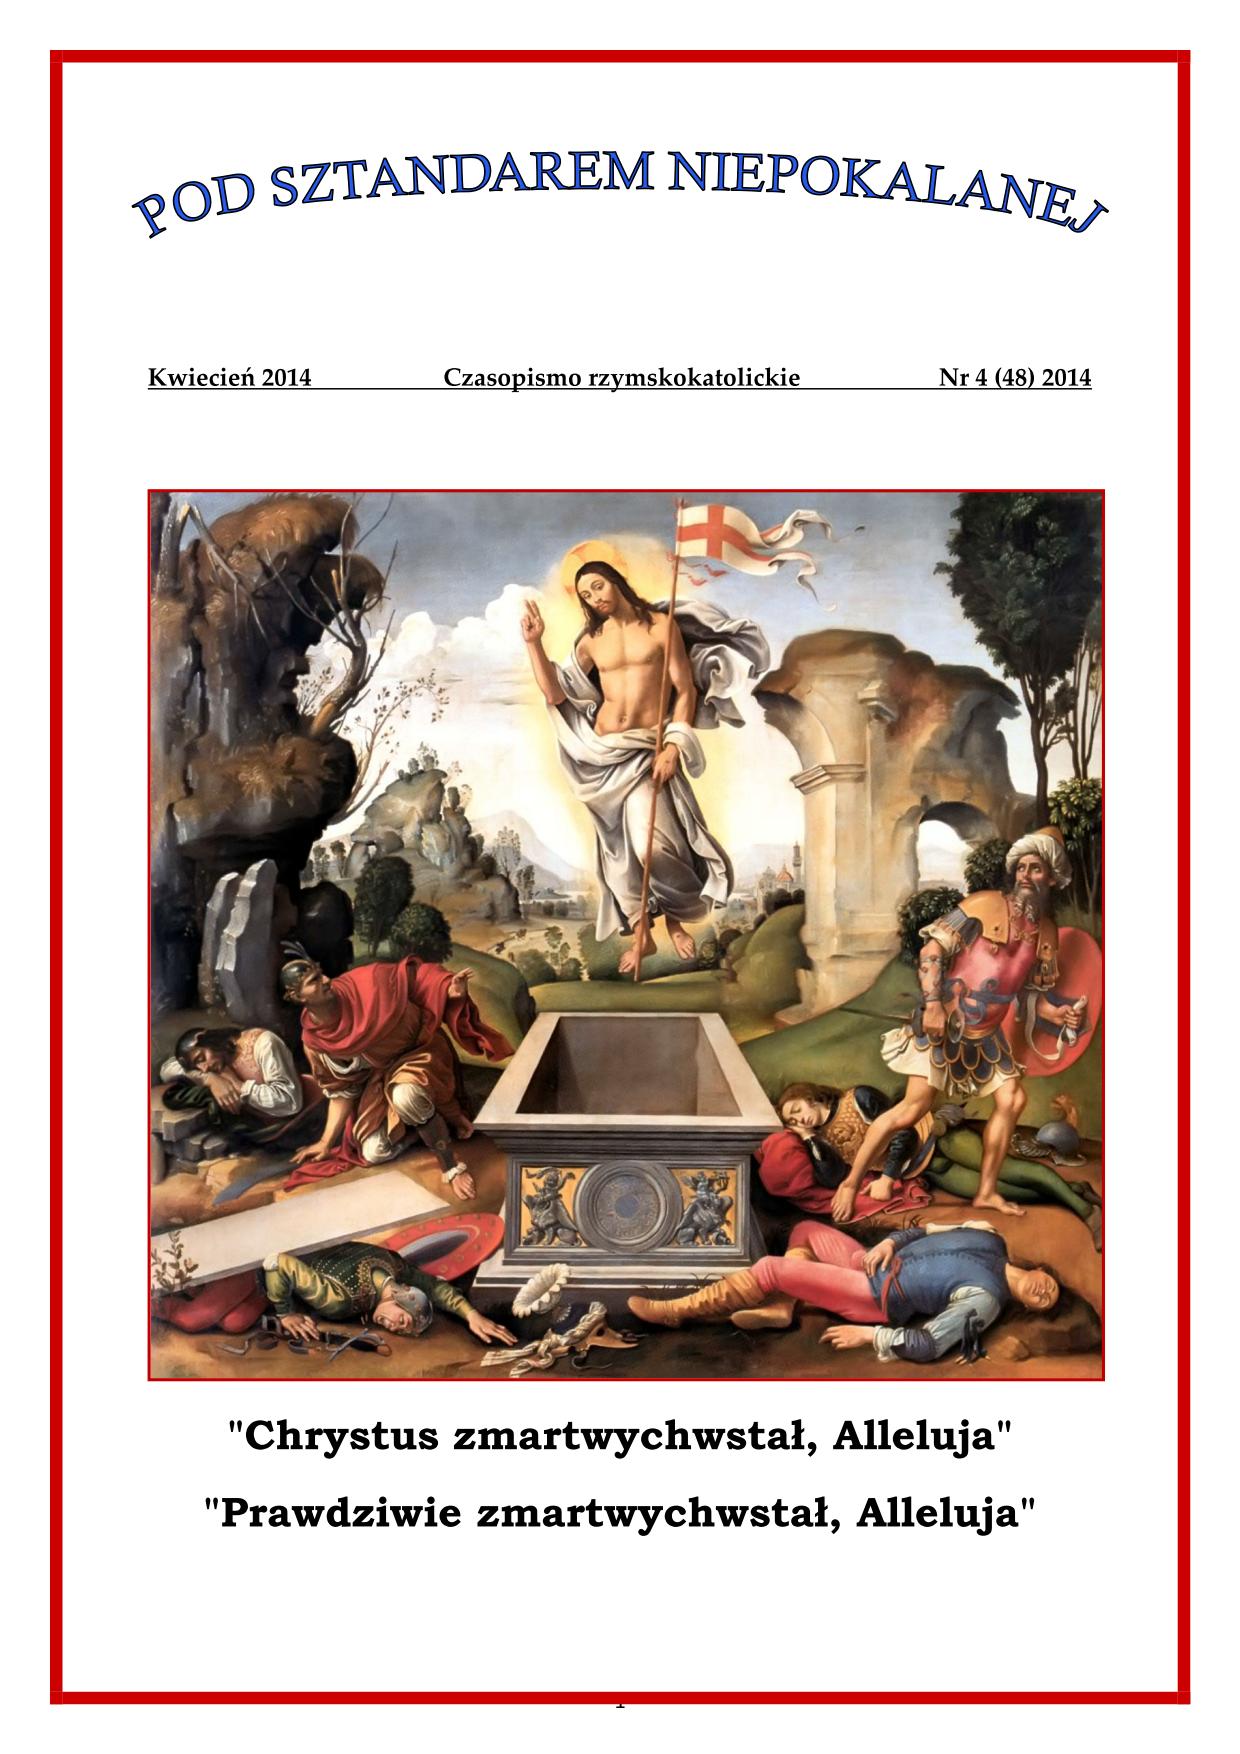 "Pod Sztandarem Niepokalanej". Nr 48. Kwiecień 2014. Czasopismo rzymskokatolickie.